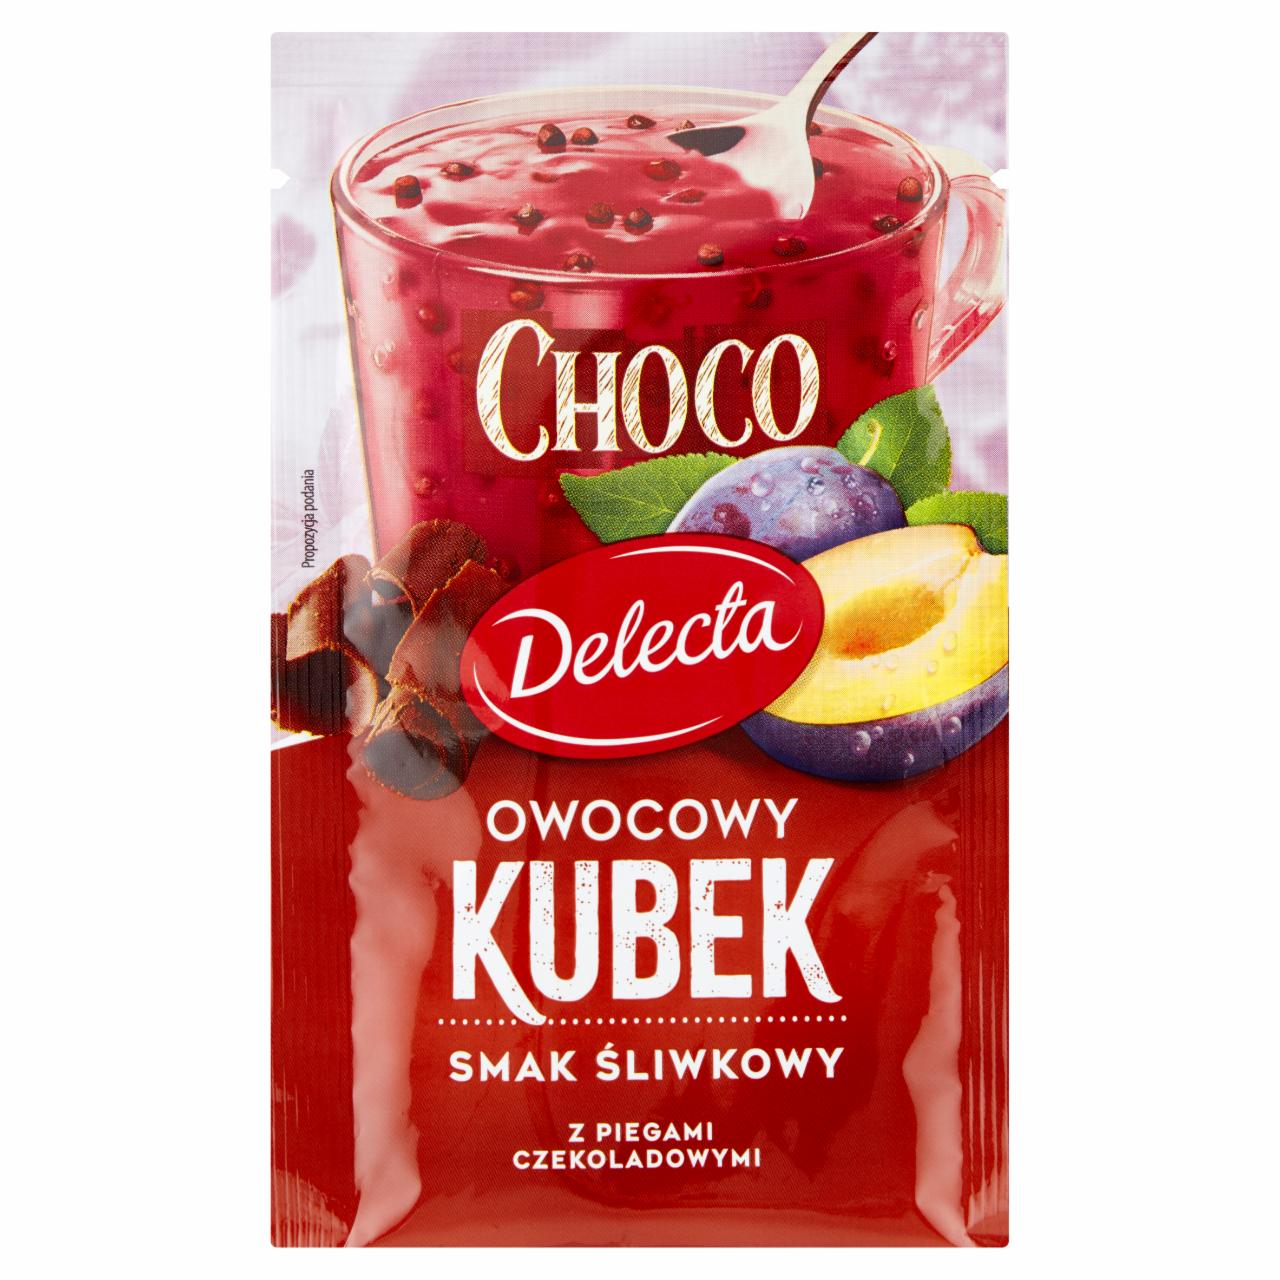 Zdjęcia - Delecta Choco Owocowy kubek Kisiel smak śliwkowy 32 g